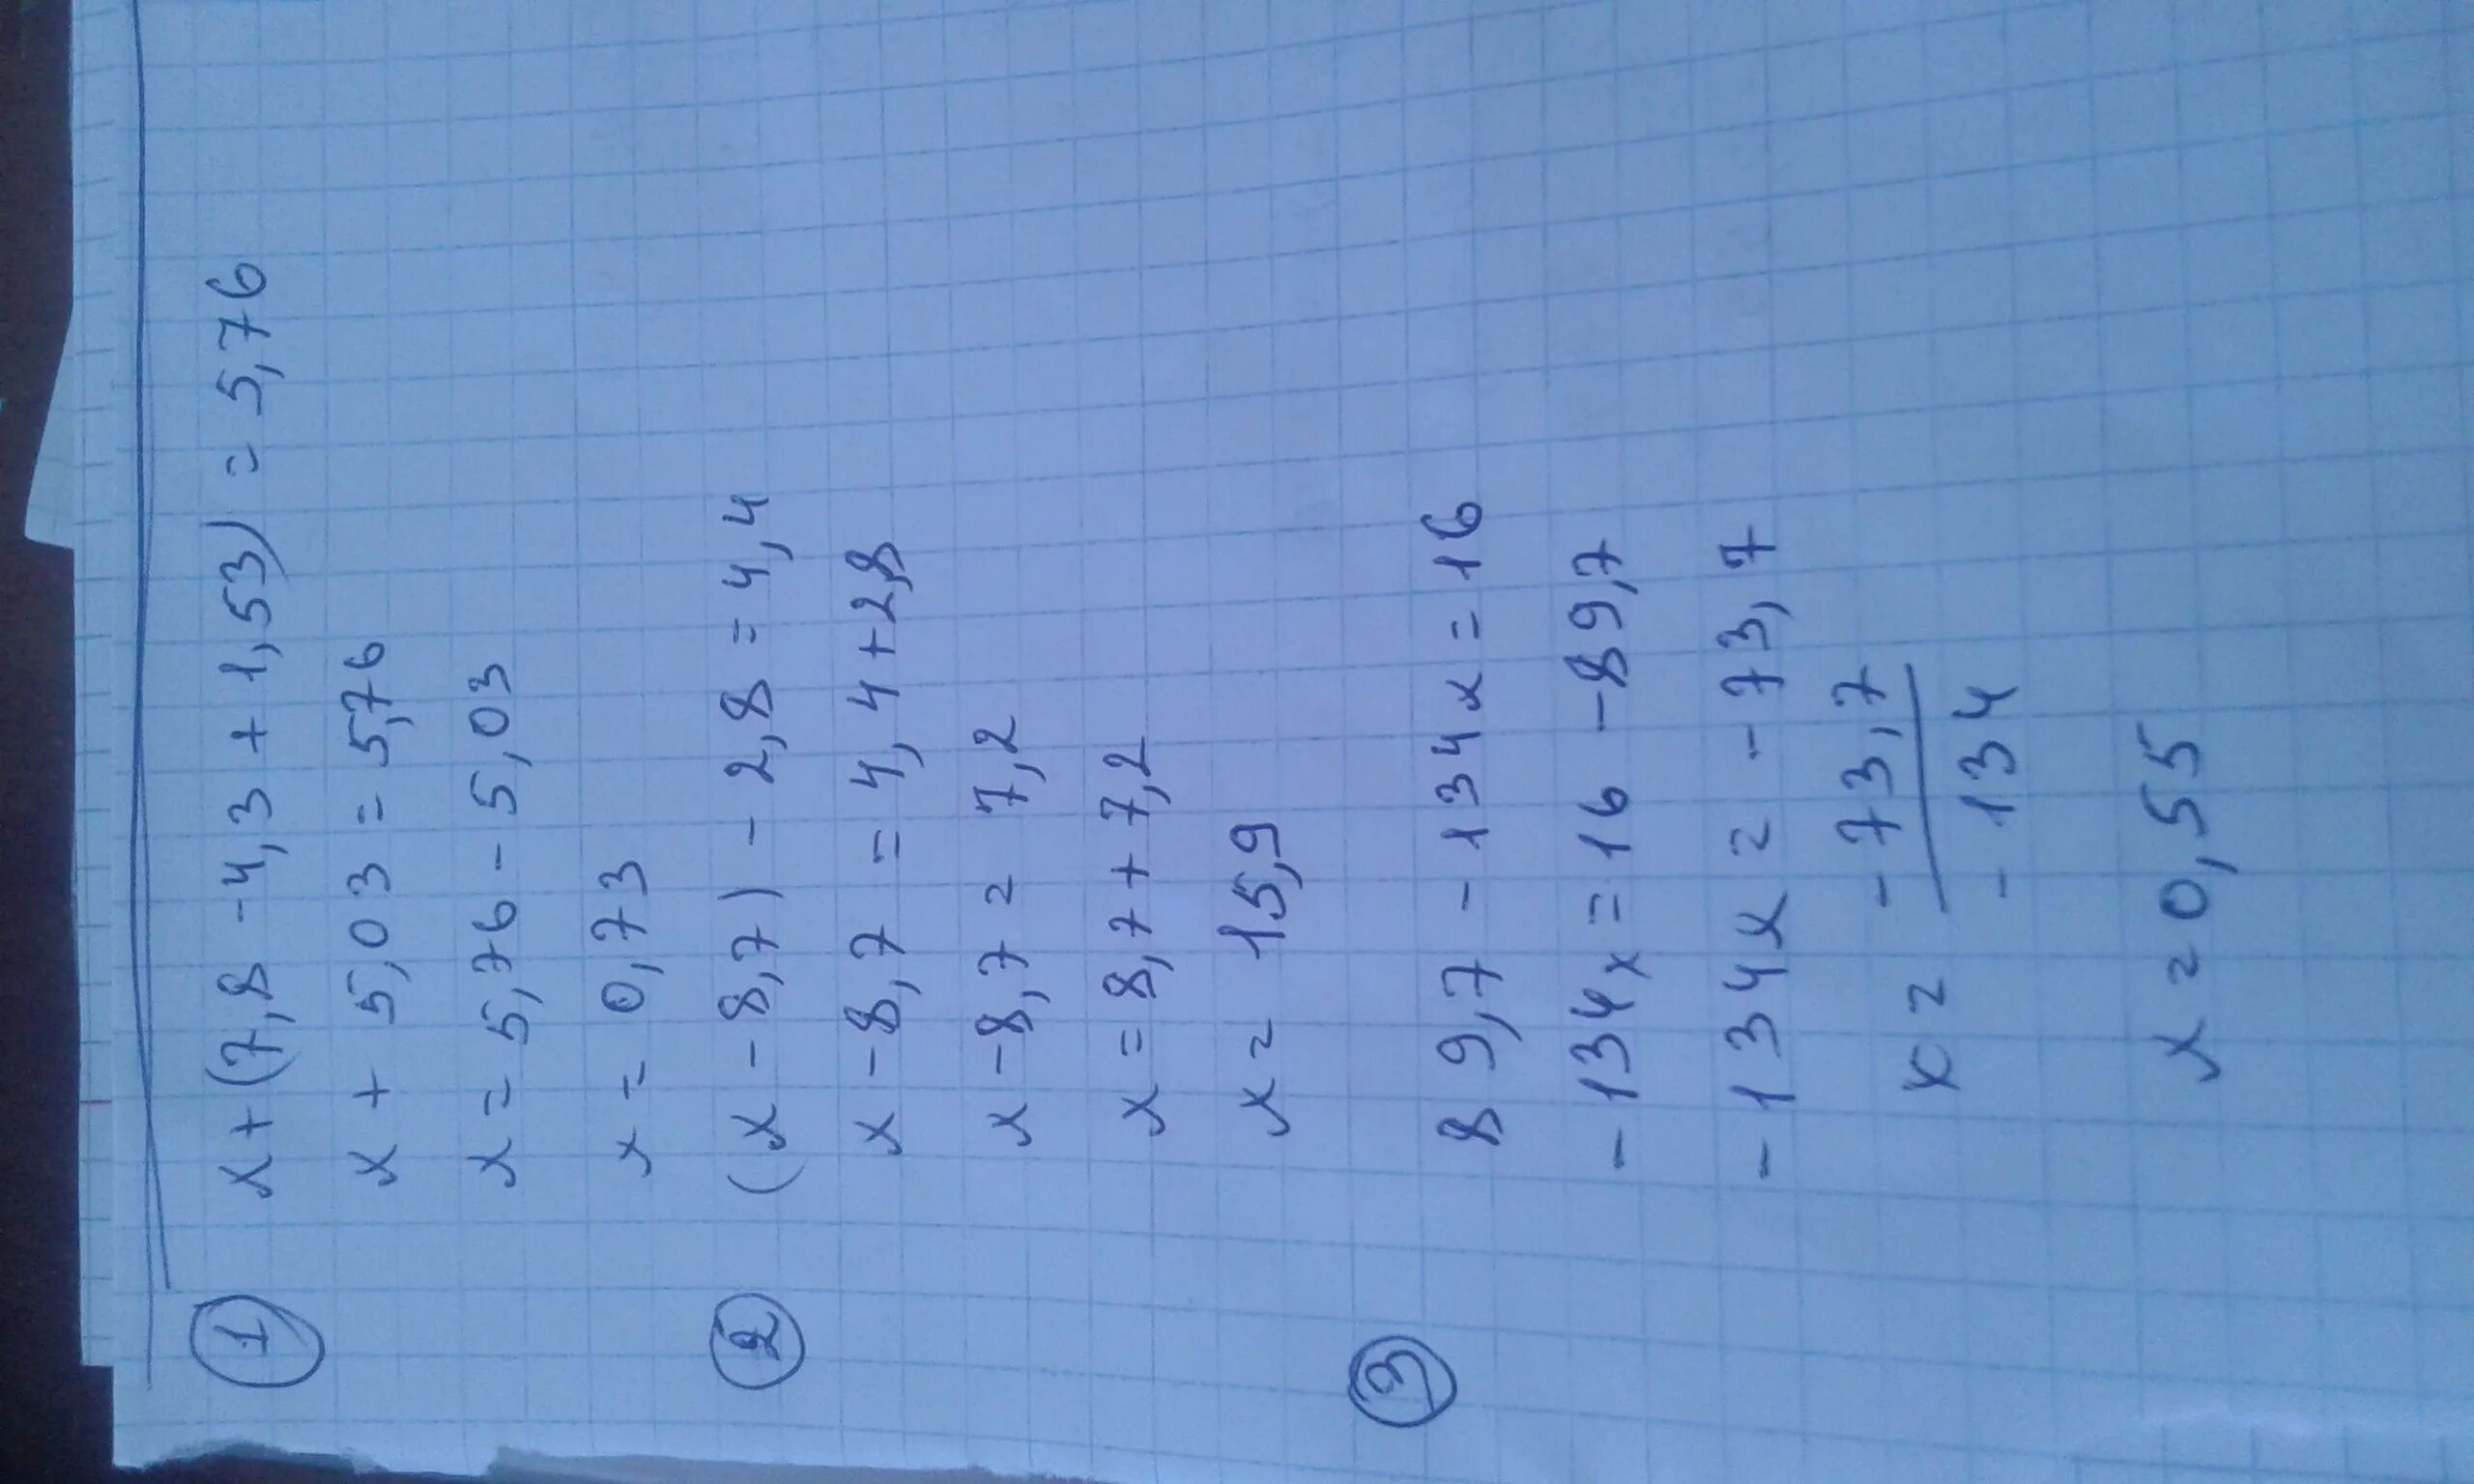 Х 16 7 1 2. −X2+7x−7. Х/2-X-3/4-X+1/8<1/2. 8-7x ⩾3x+5. 1/X^2.